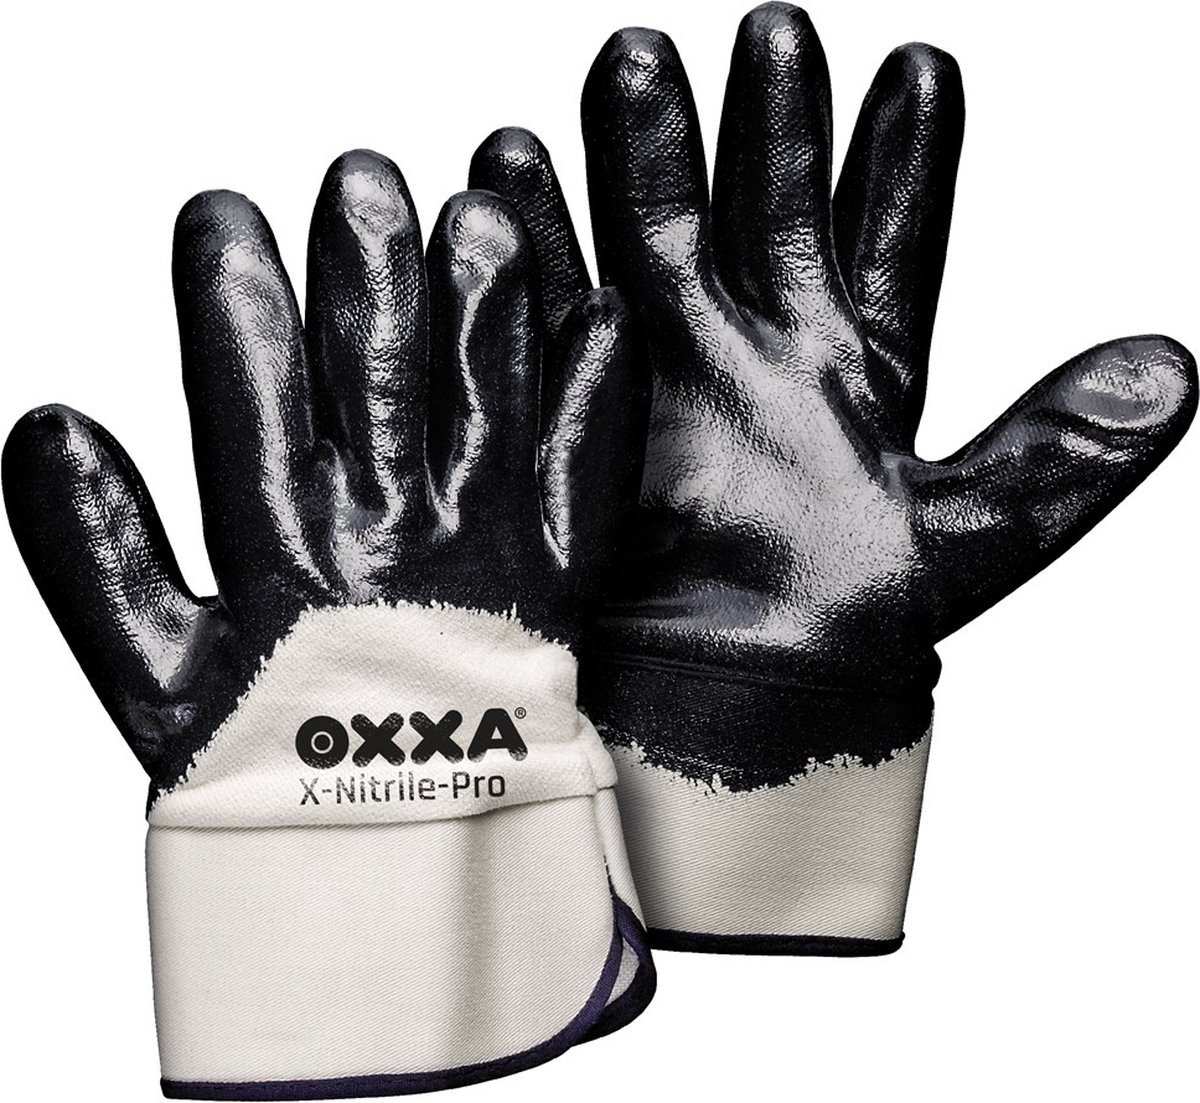 OXXA X-Nitrile-Pro 51-080 handschoen -12 stuks XL Oxxa - Zwart/wit - Nitril - Kap - EN 388:2016